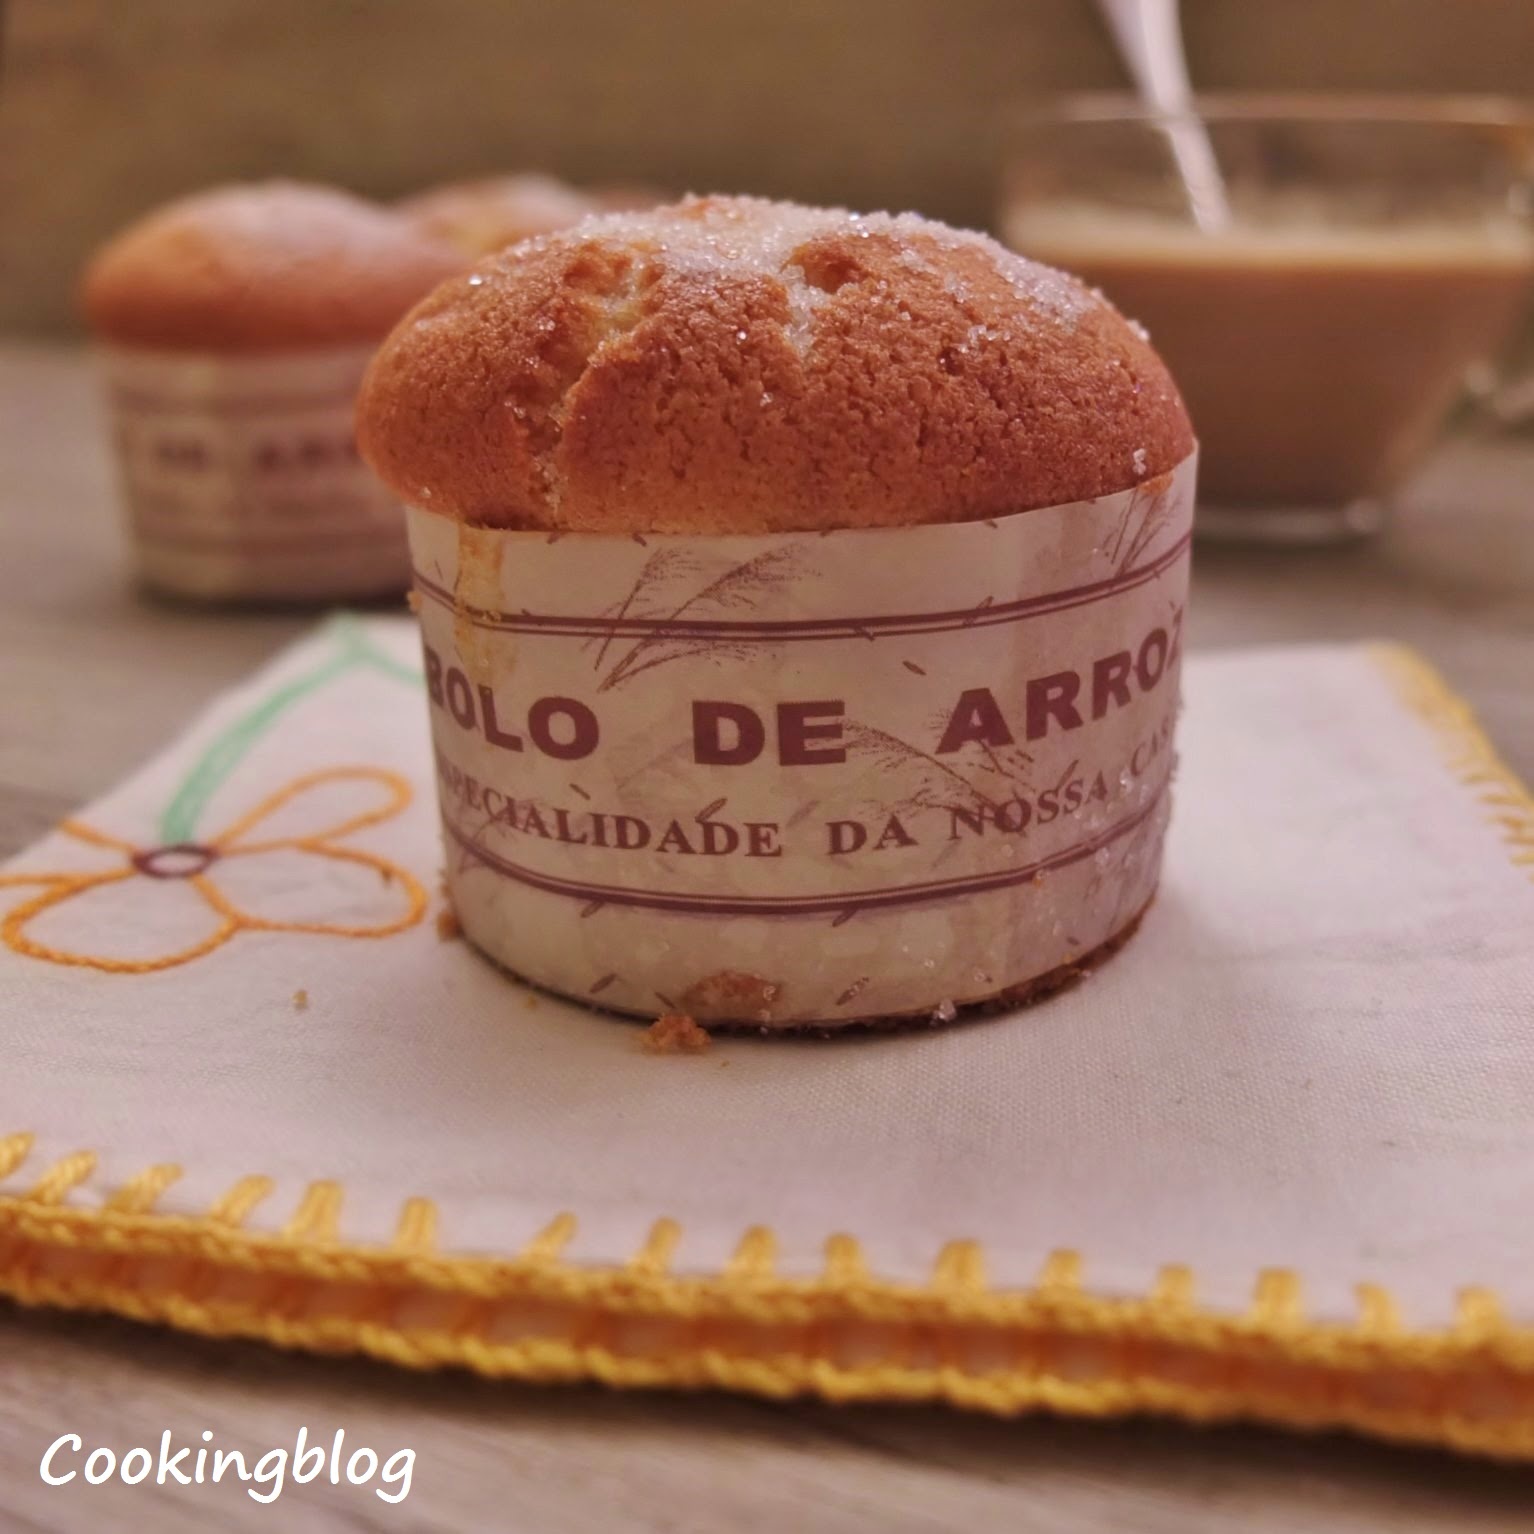 Bolos de arroz | Portuguese Rice Muffins